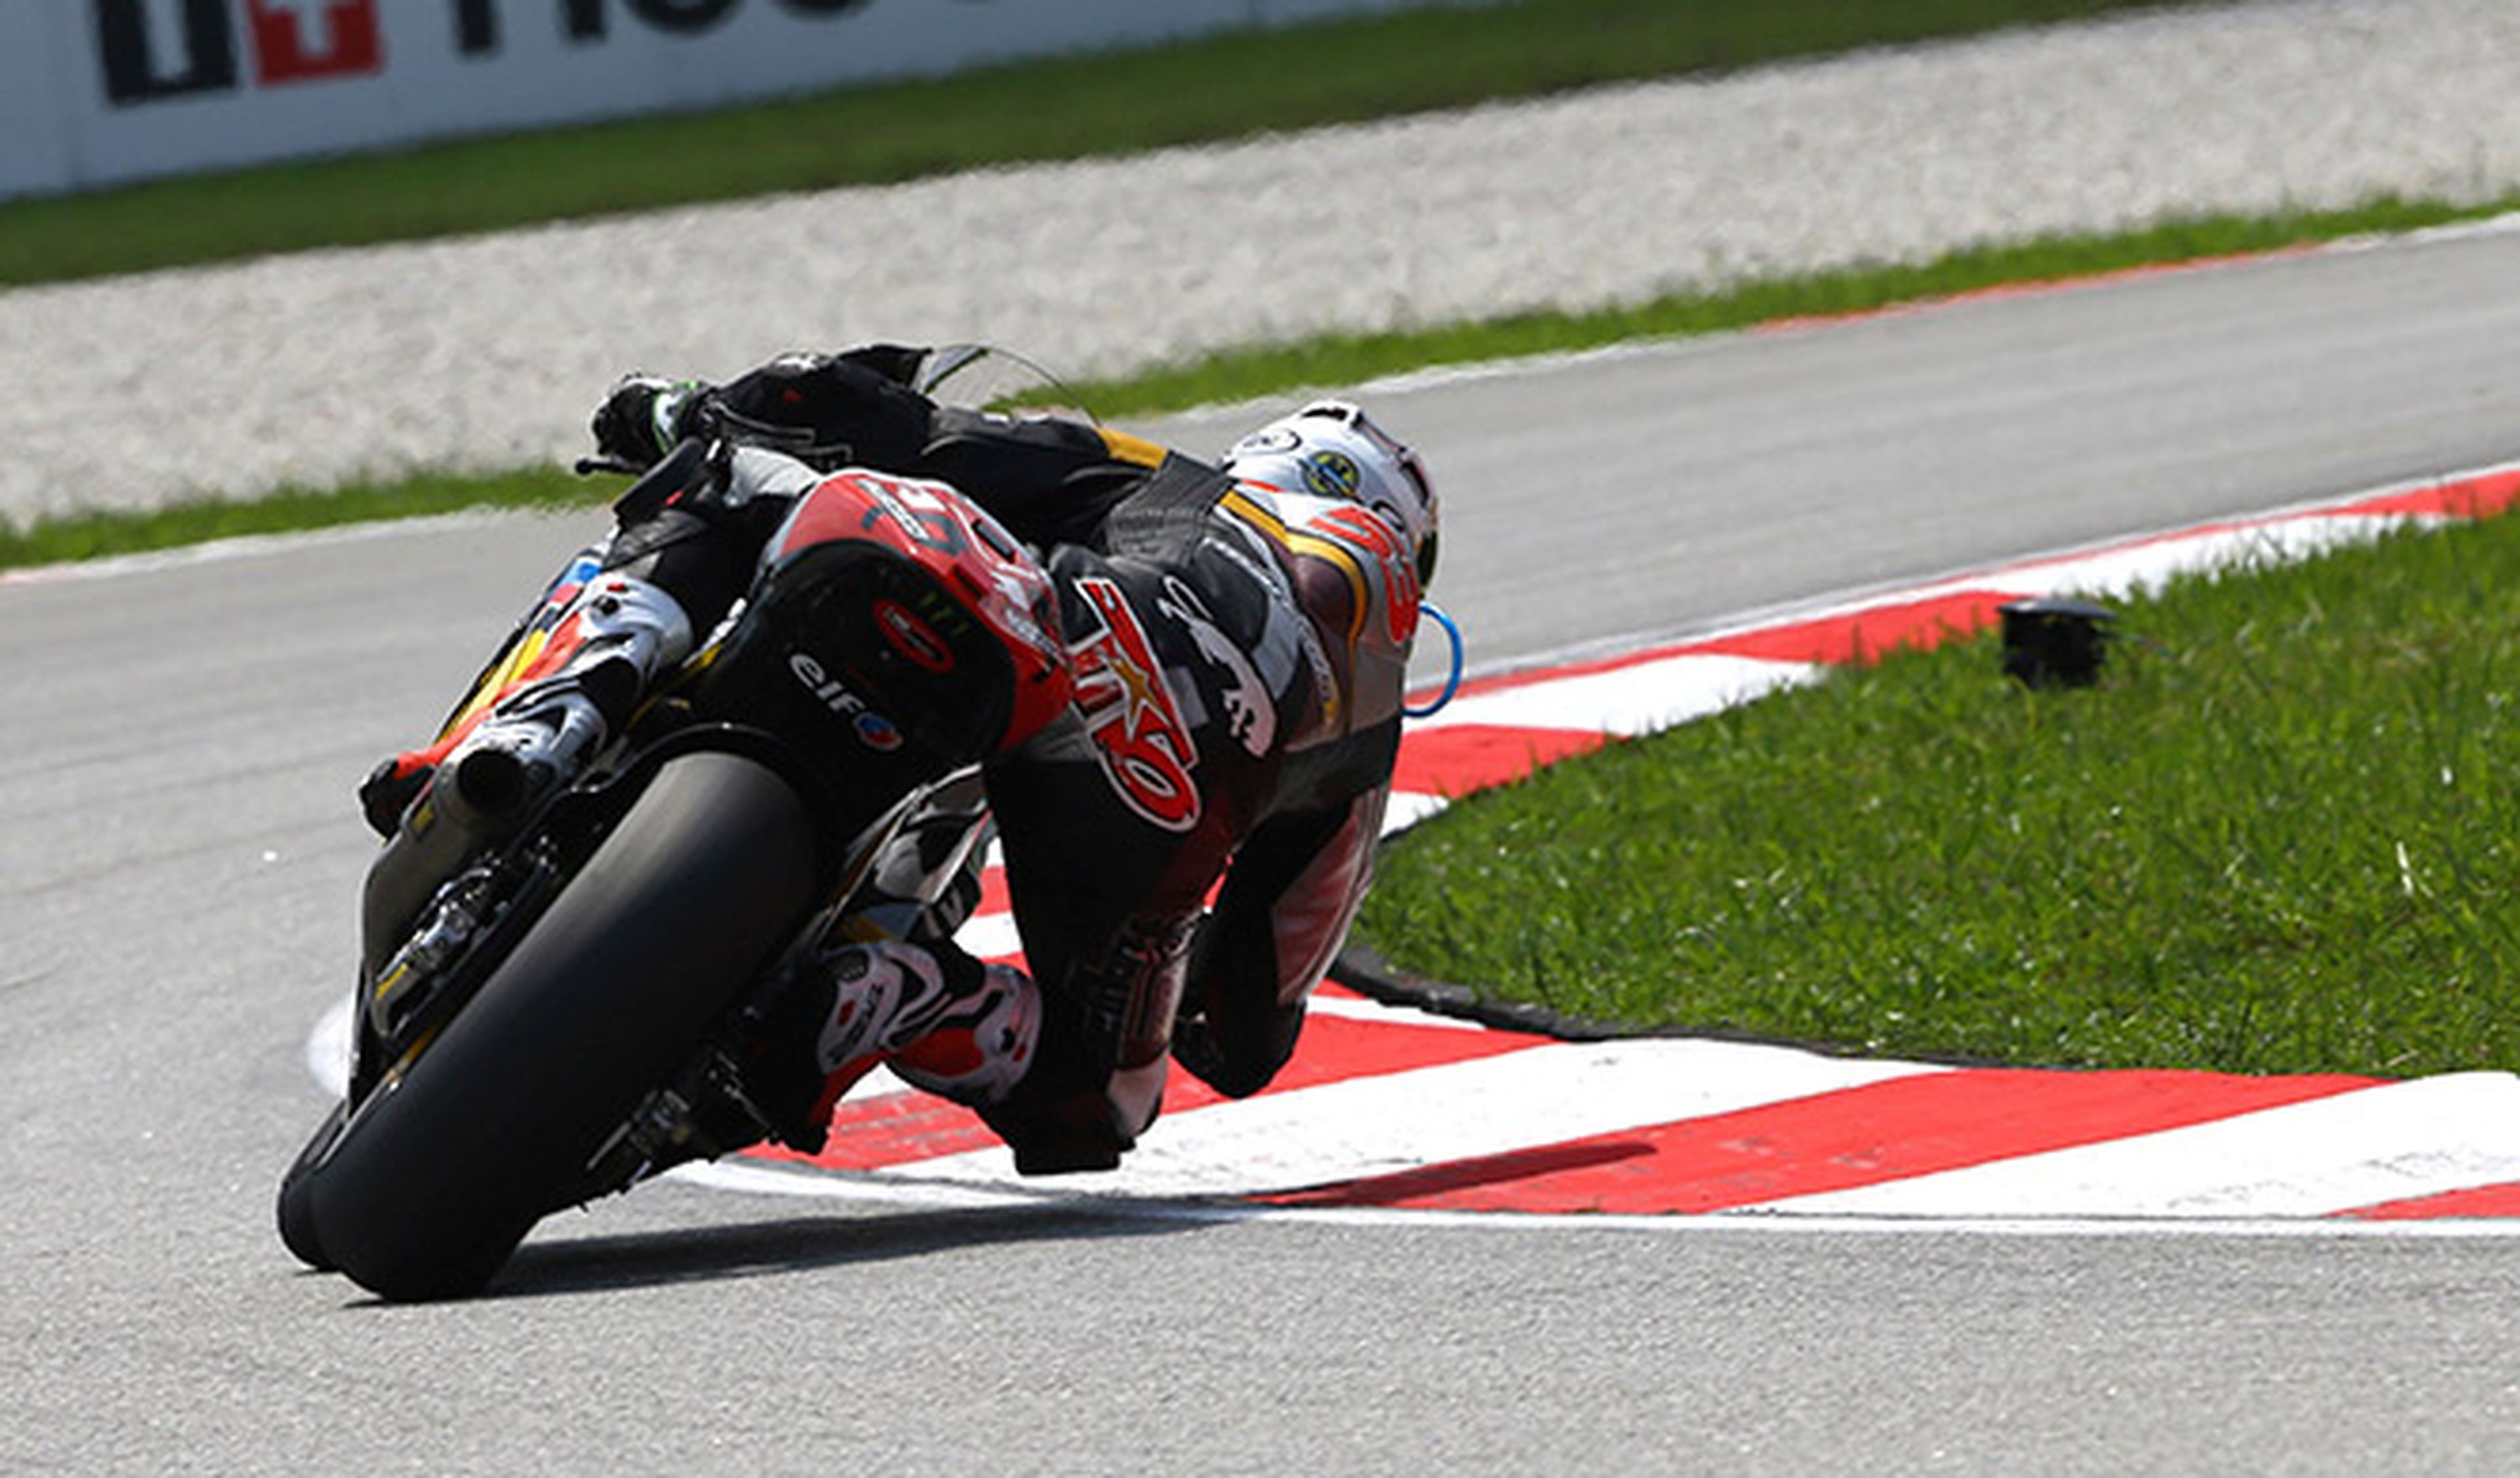 Clasificación Moto2 GP Malasia 2014: nueva pole para Rabat